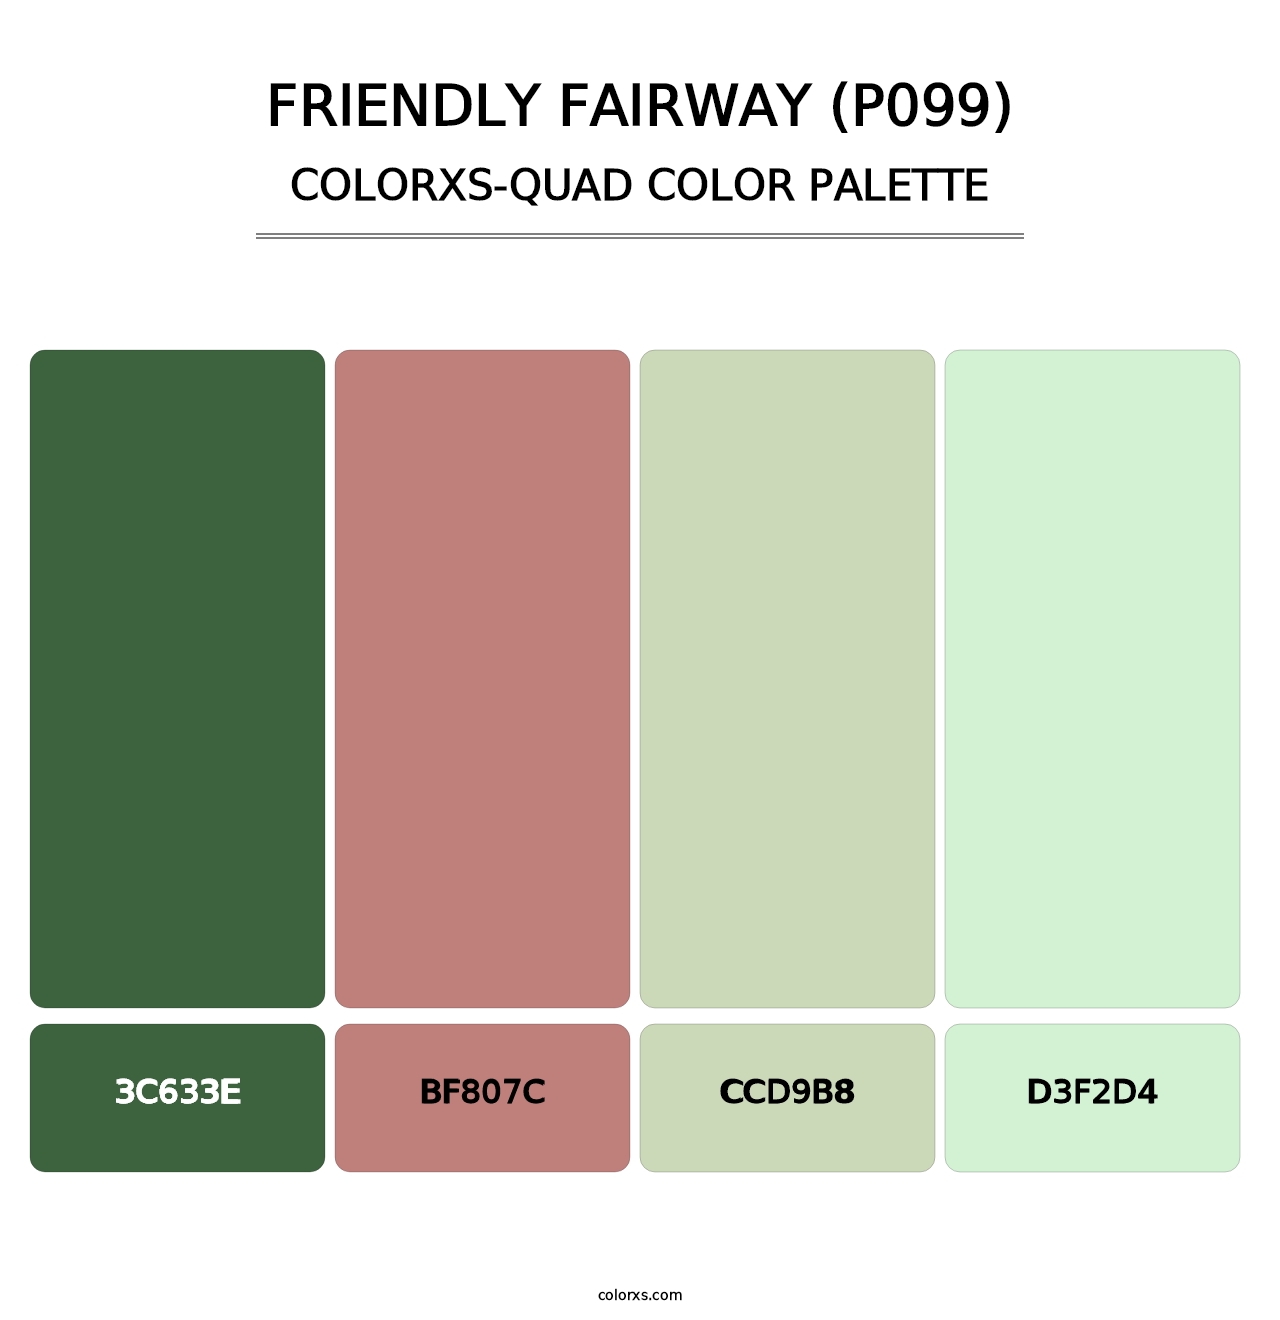 Friendly Fairway (P099) - Colorxs Quad Palette